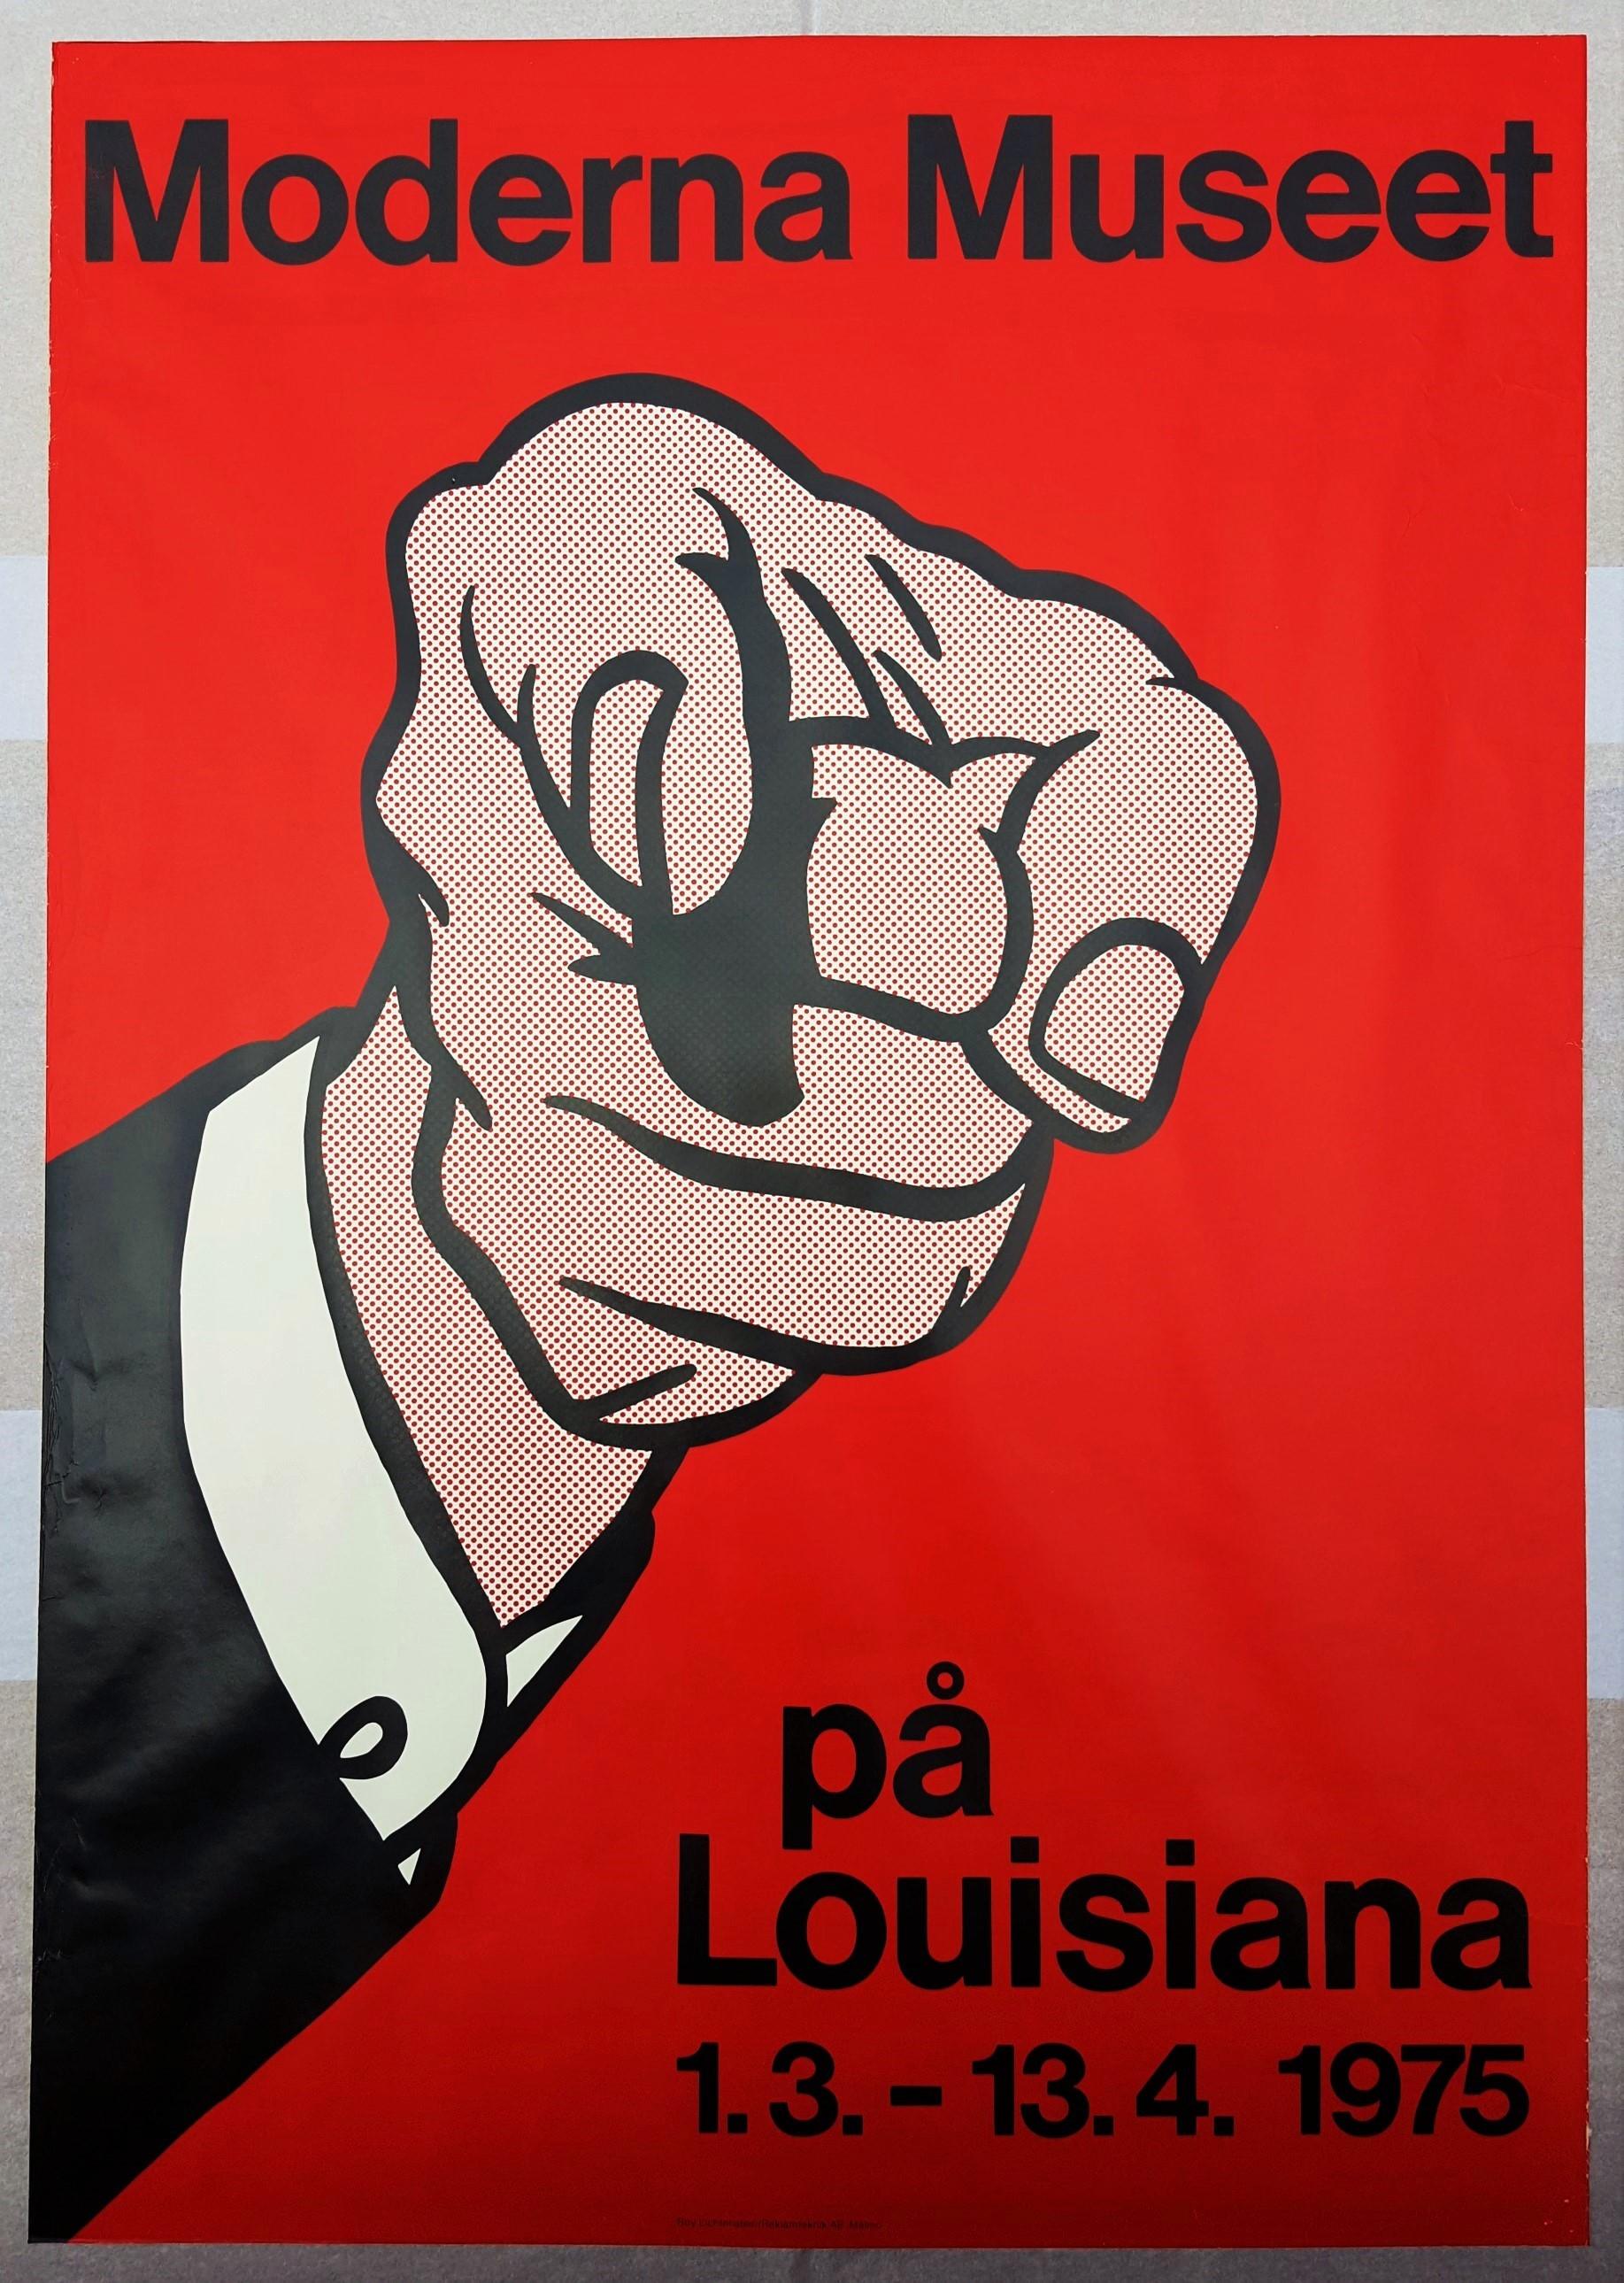 Moderna Museet im Louisiana (Finger Pointing) - Print by Roy Lichtenstein